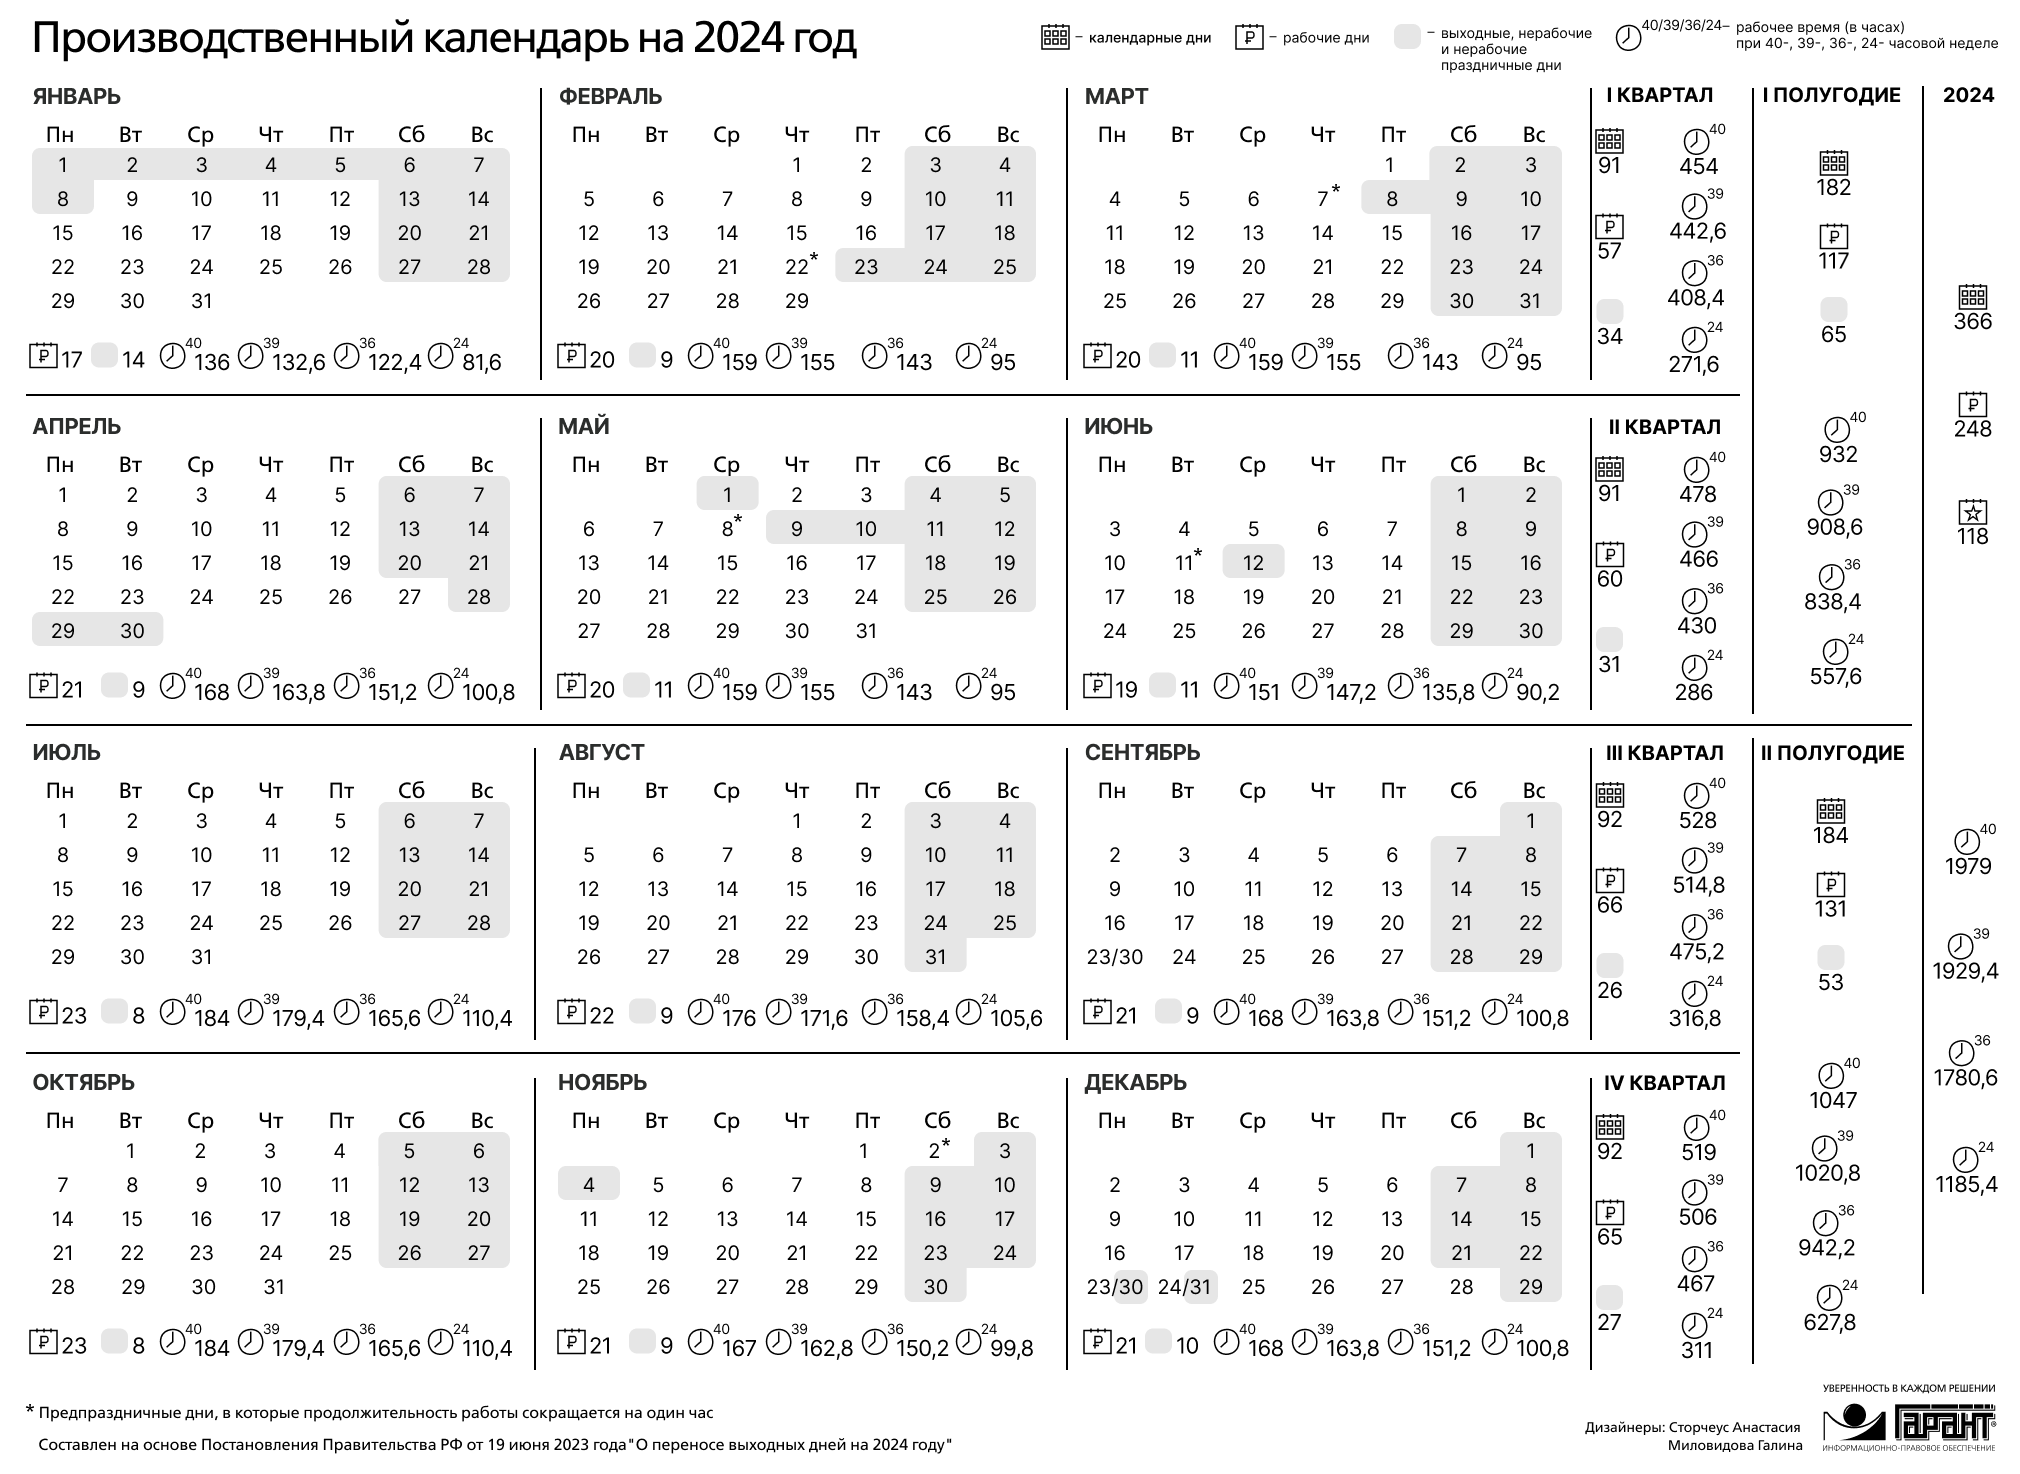 Выходные дни в апреле 2024 в татарстане. Праздничные дни 2024 года в России производственный календарь. Календарь на 2024 год с праздниками и выходными производственный РФ. Производственный календарь на 2024 го од. Зводственный календарь на 2024.